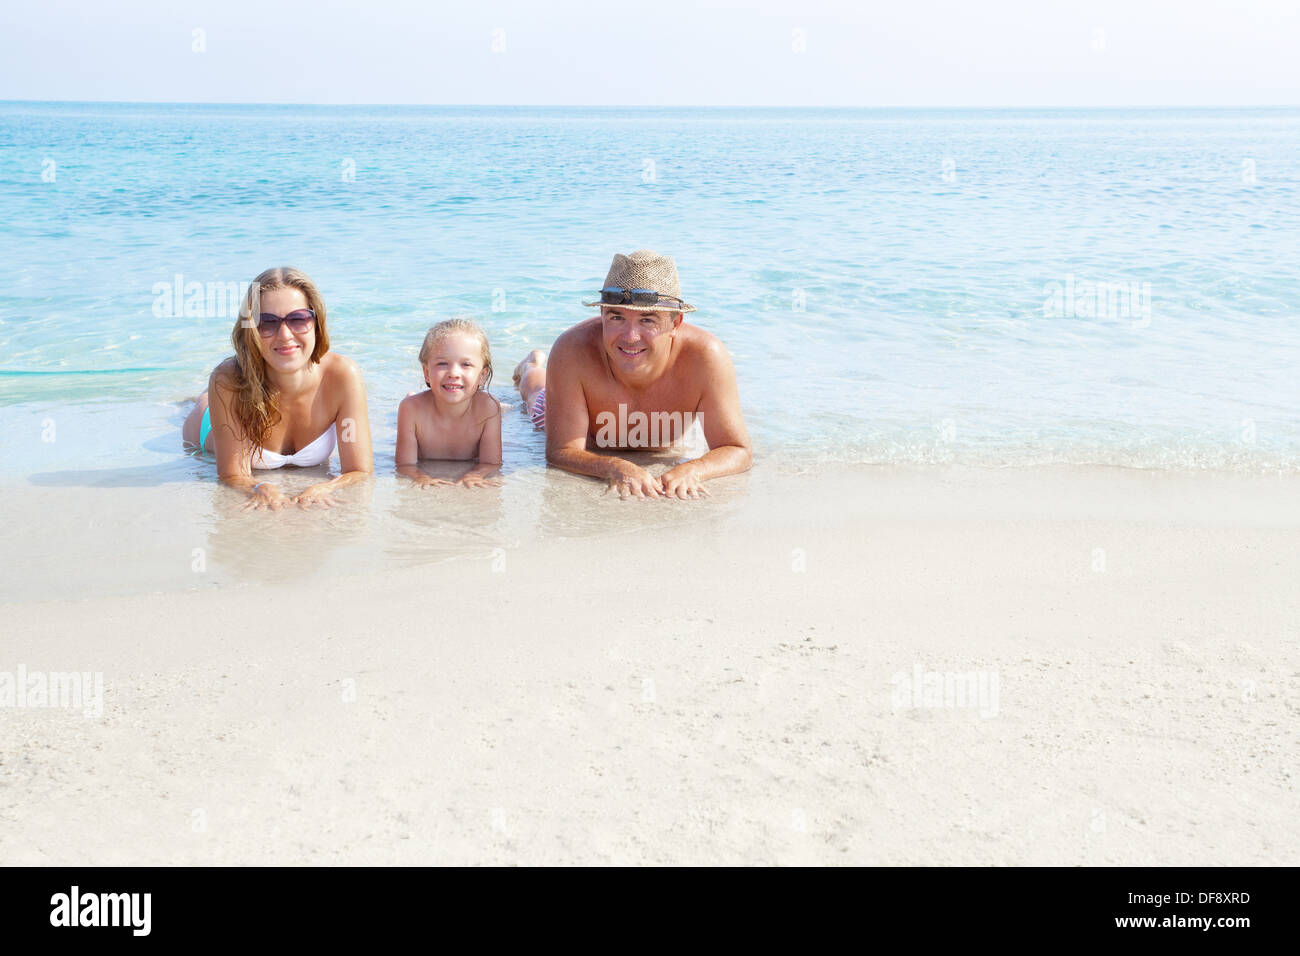 La famiglia felice la posa sulla sabbia godendo l'oceano Foto Stock